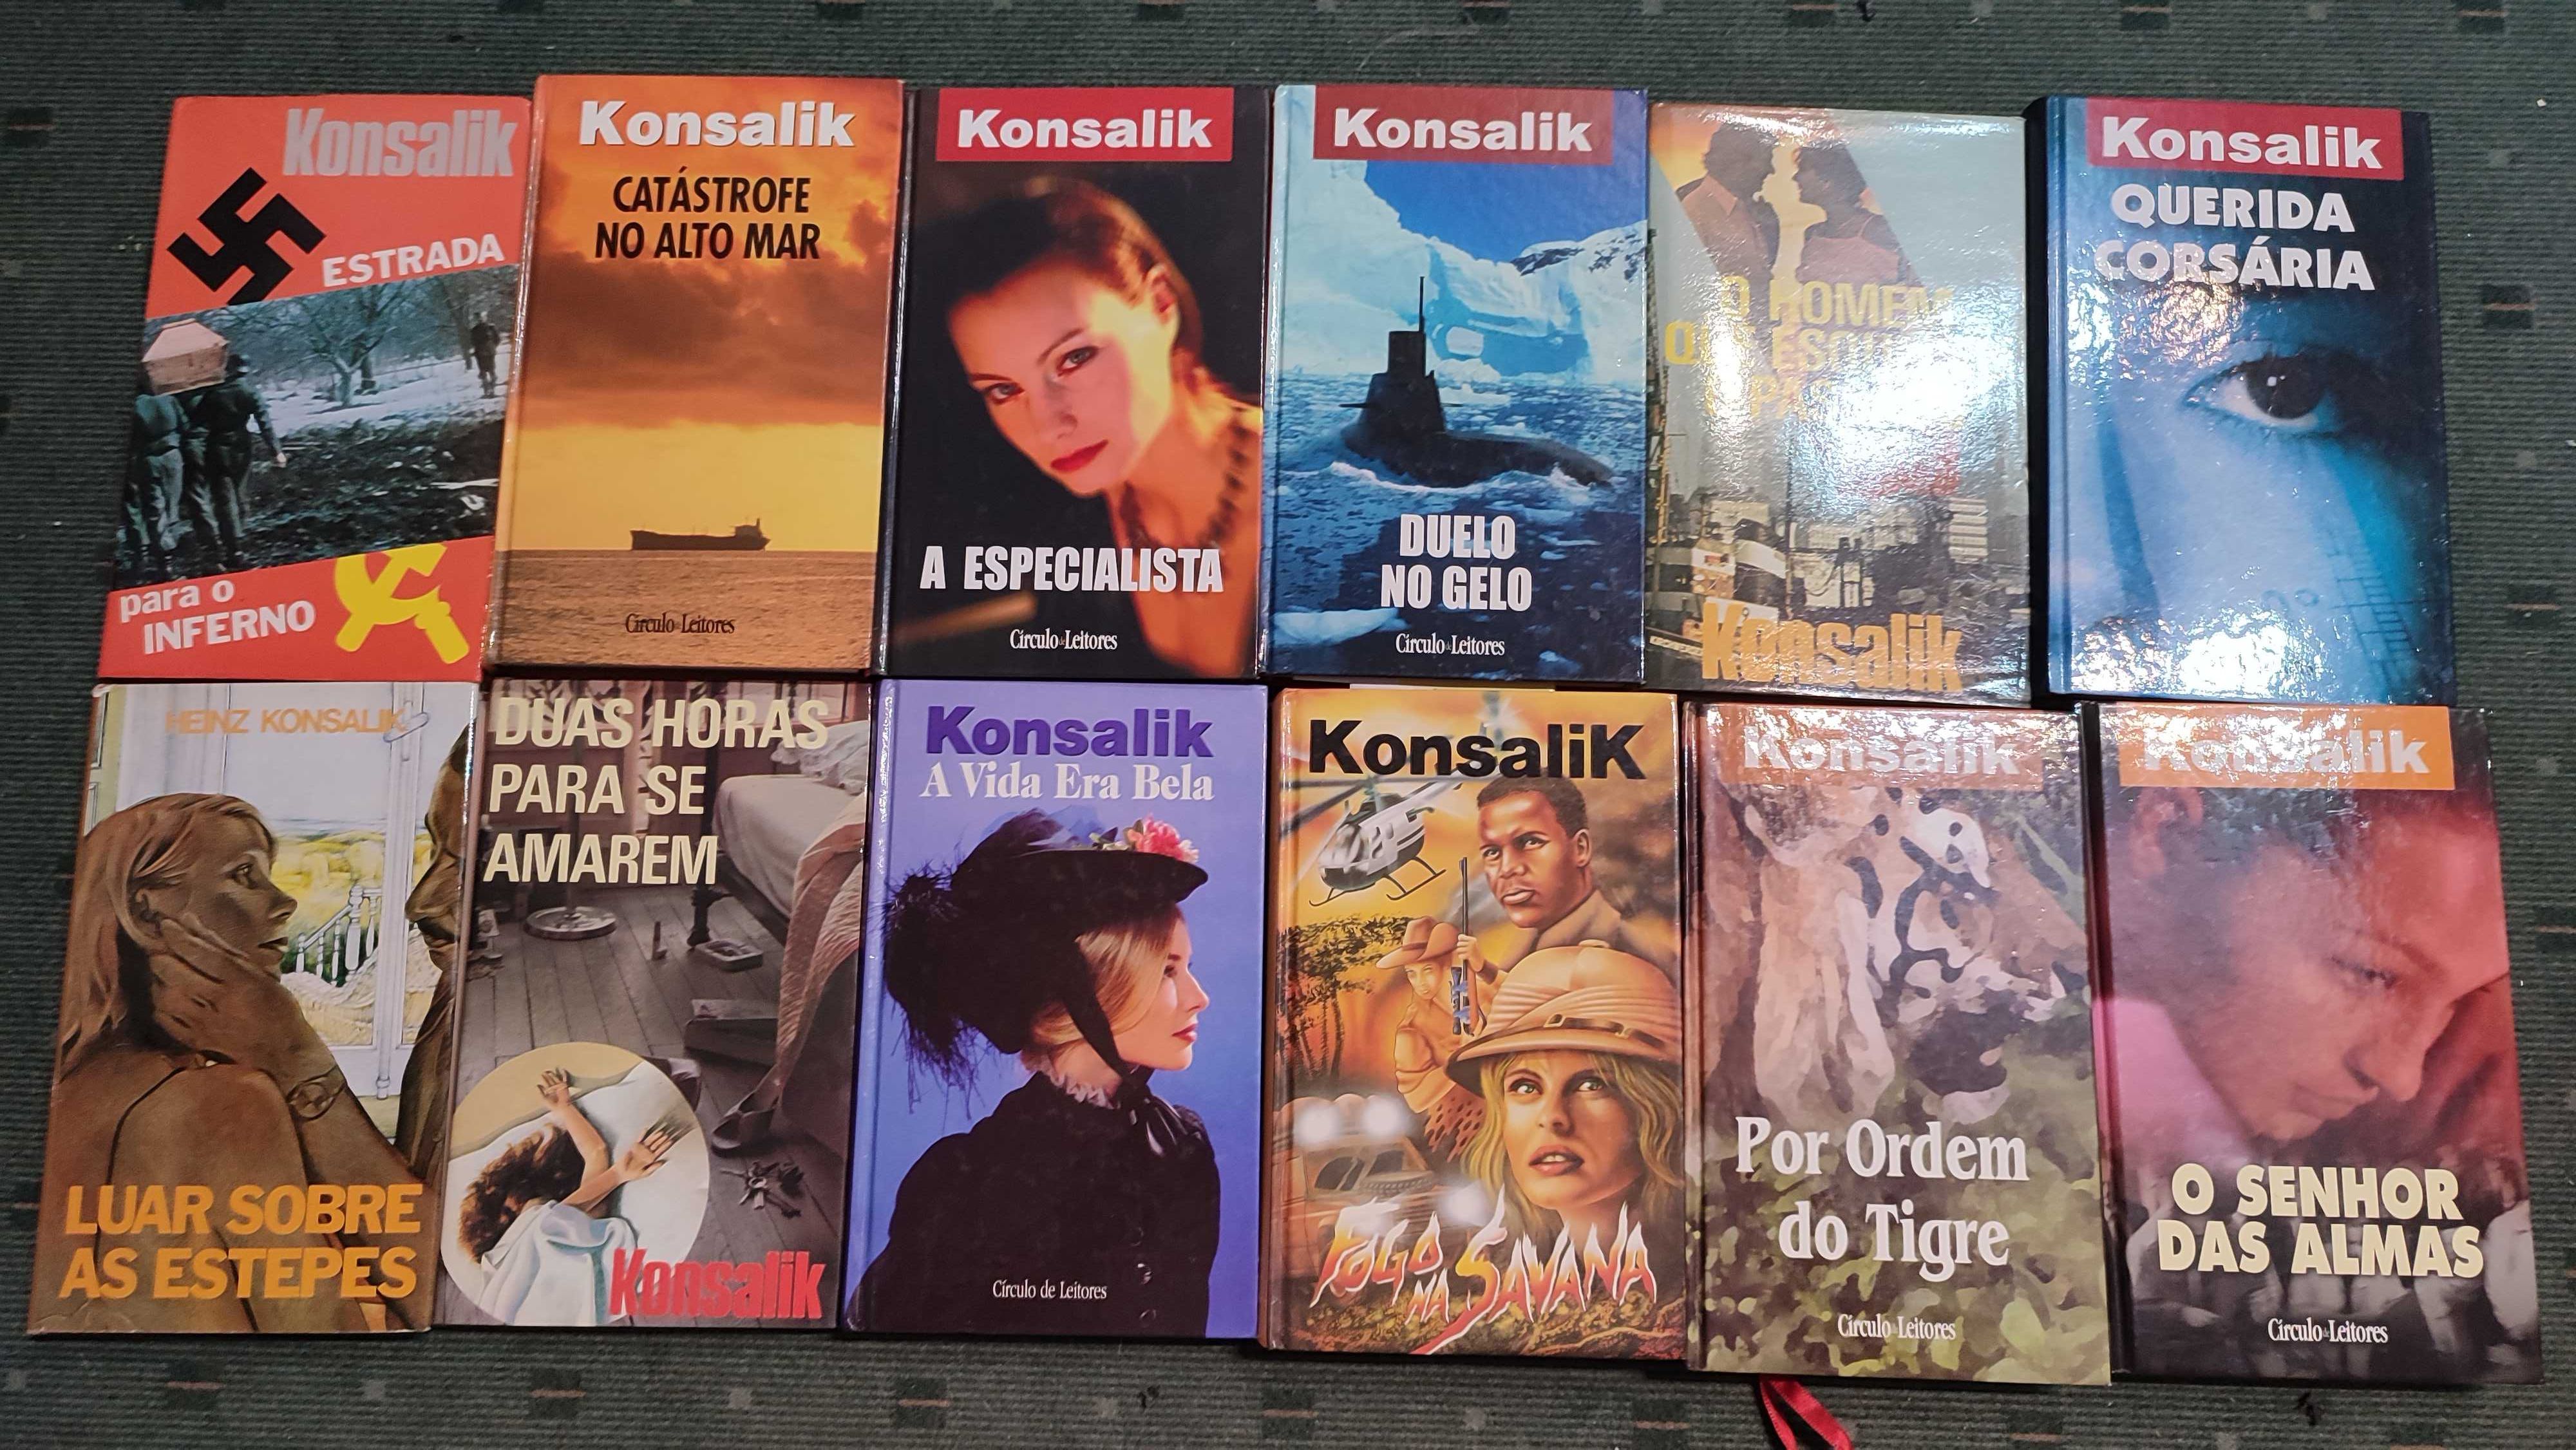 Lote de livros de Heinz Konsalik - Cada 2 €